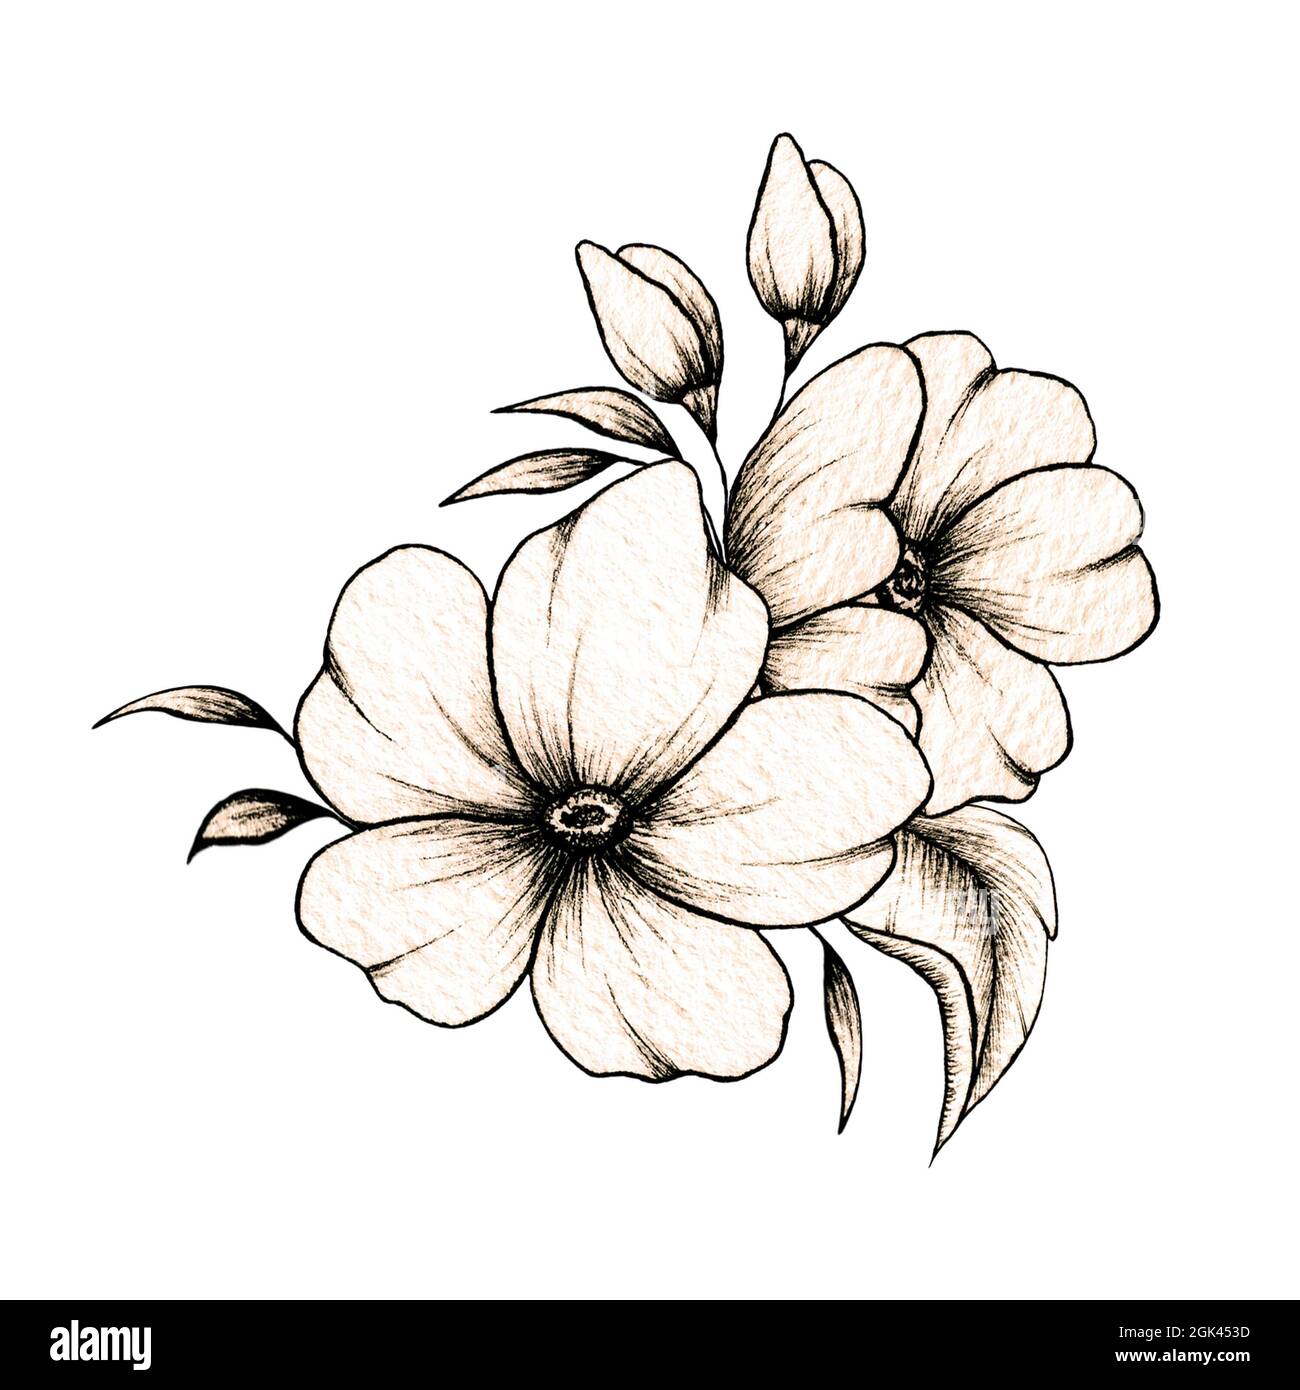 Einfache Linie Zeichnung florale Zusammensetzung mit verschiedenen großen und kleinen Blumen und Blätter isoliert auf weißem Hintergrund, warme Tinte Zeichnung Stockfoto